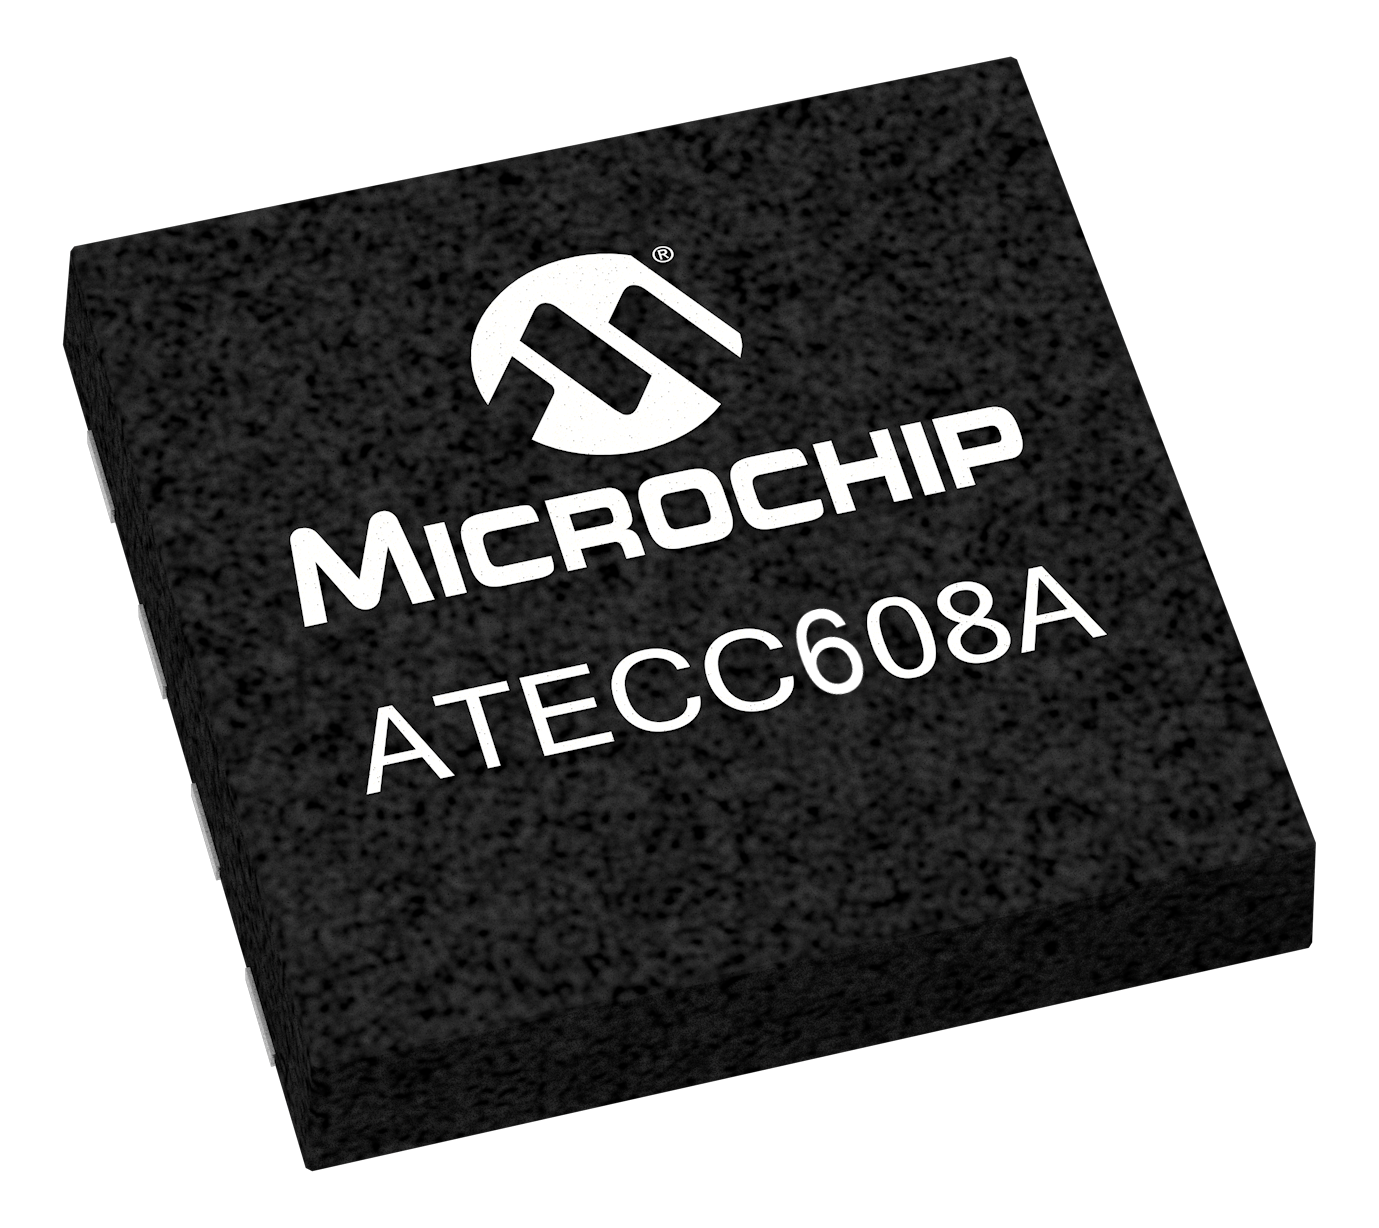 ATECC608A UDFN chip shot.png